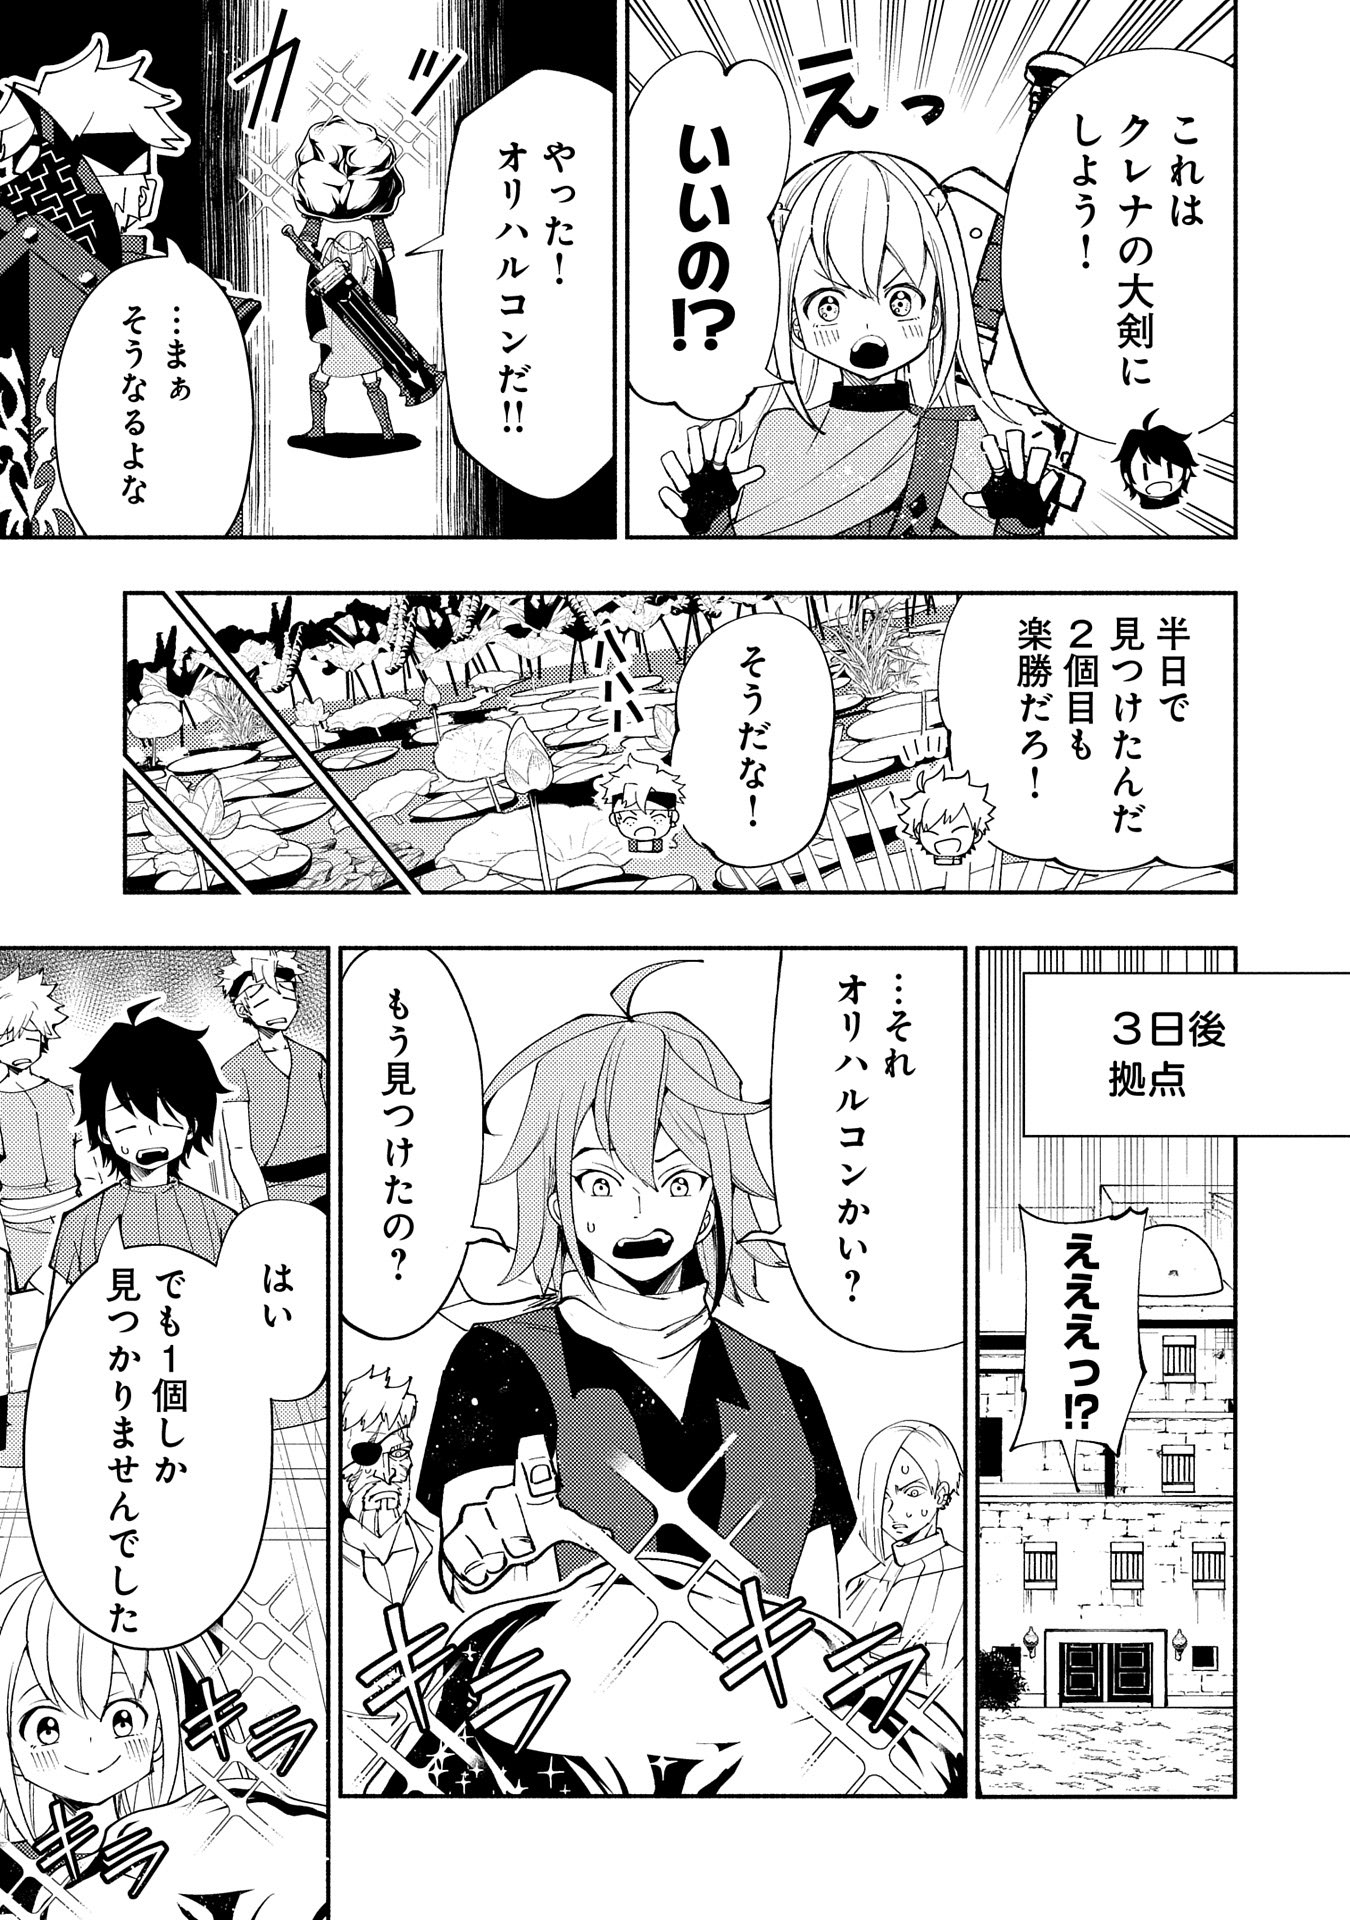 Hell Mode: Yarikomi Suki no Gamer wa Hai Settei no Isekai de Musou Suru - Chapter 63 - Page 11